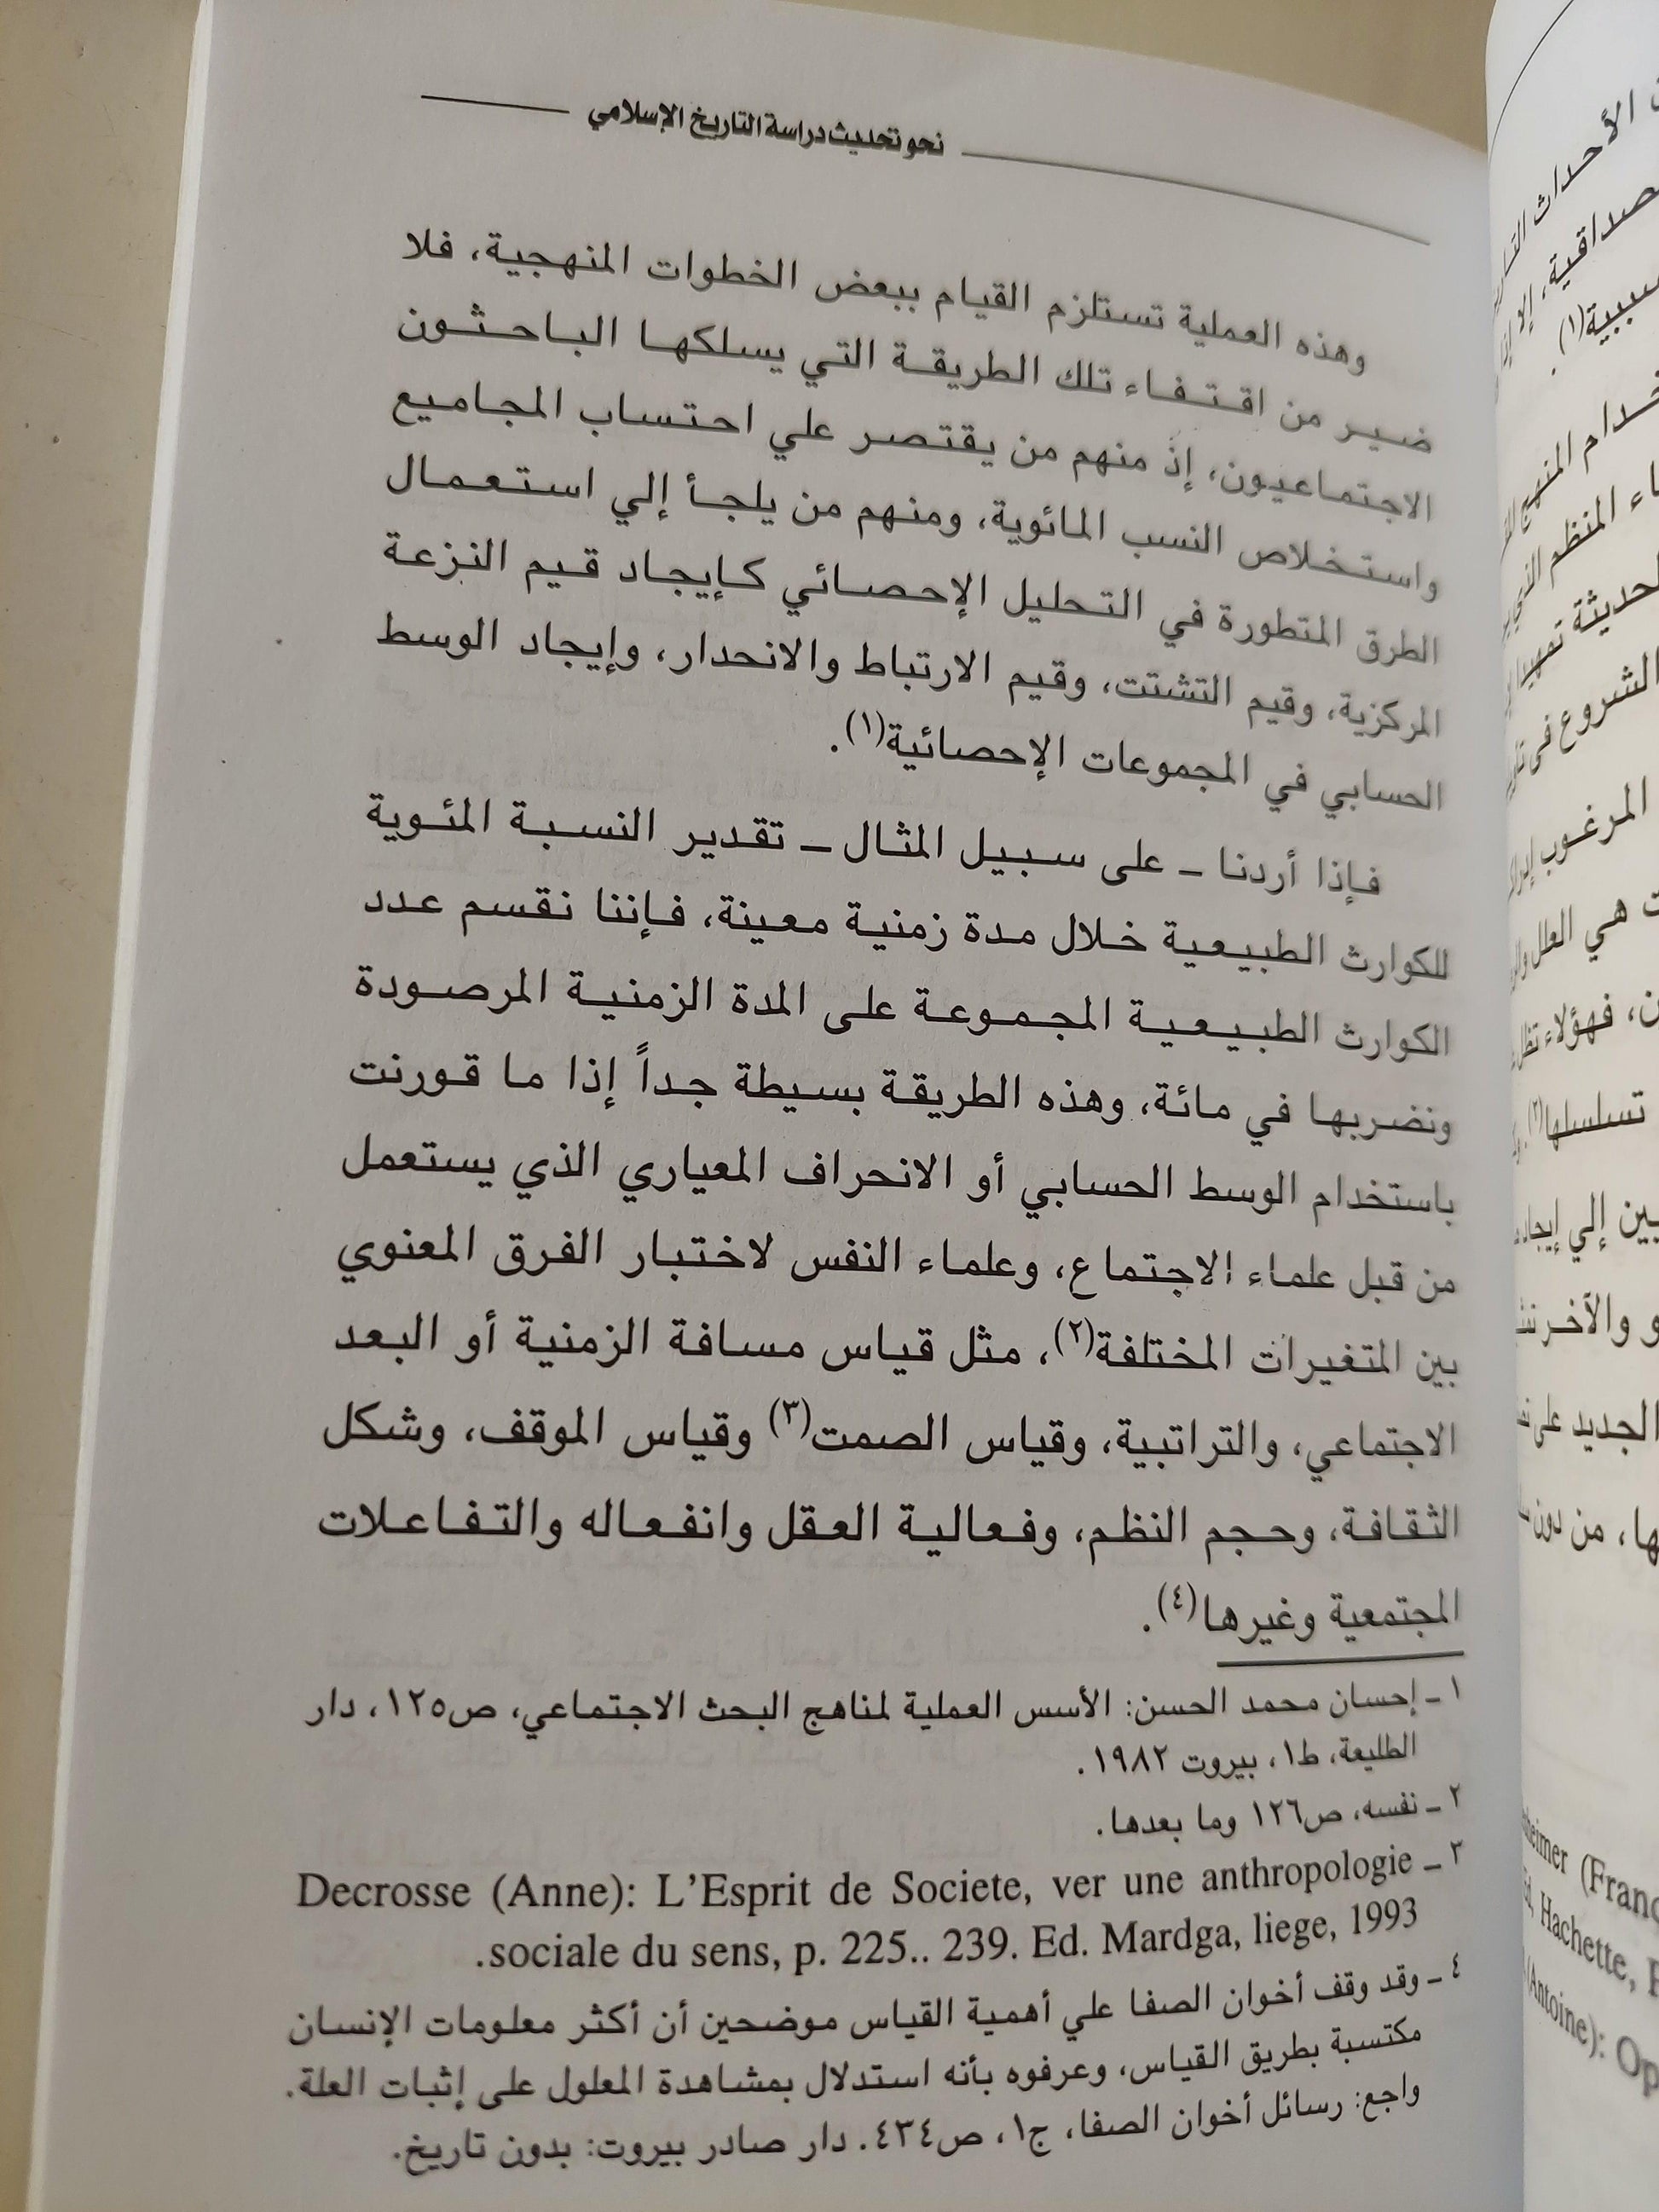 نحو تحديث دراسة التاريخ الإسلامي : مقاربات منهجية / د. محمد تضغوت ط1 - متجر كتب مصر